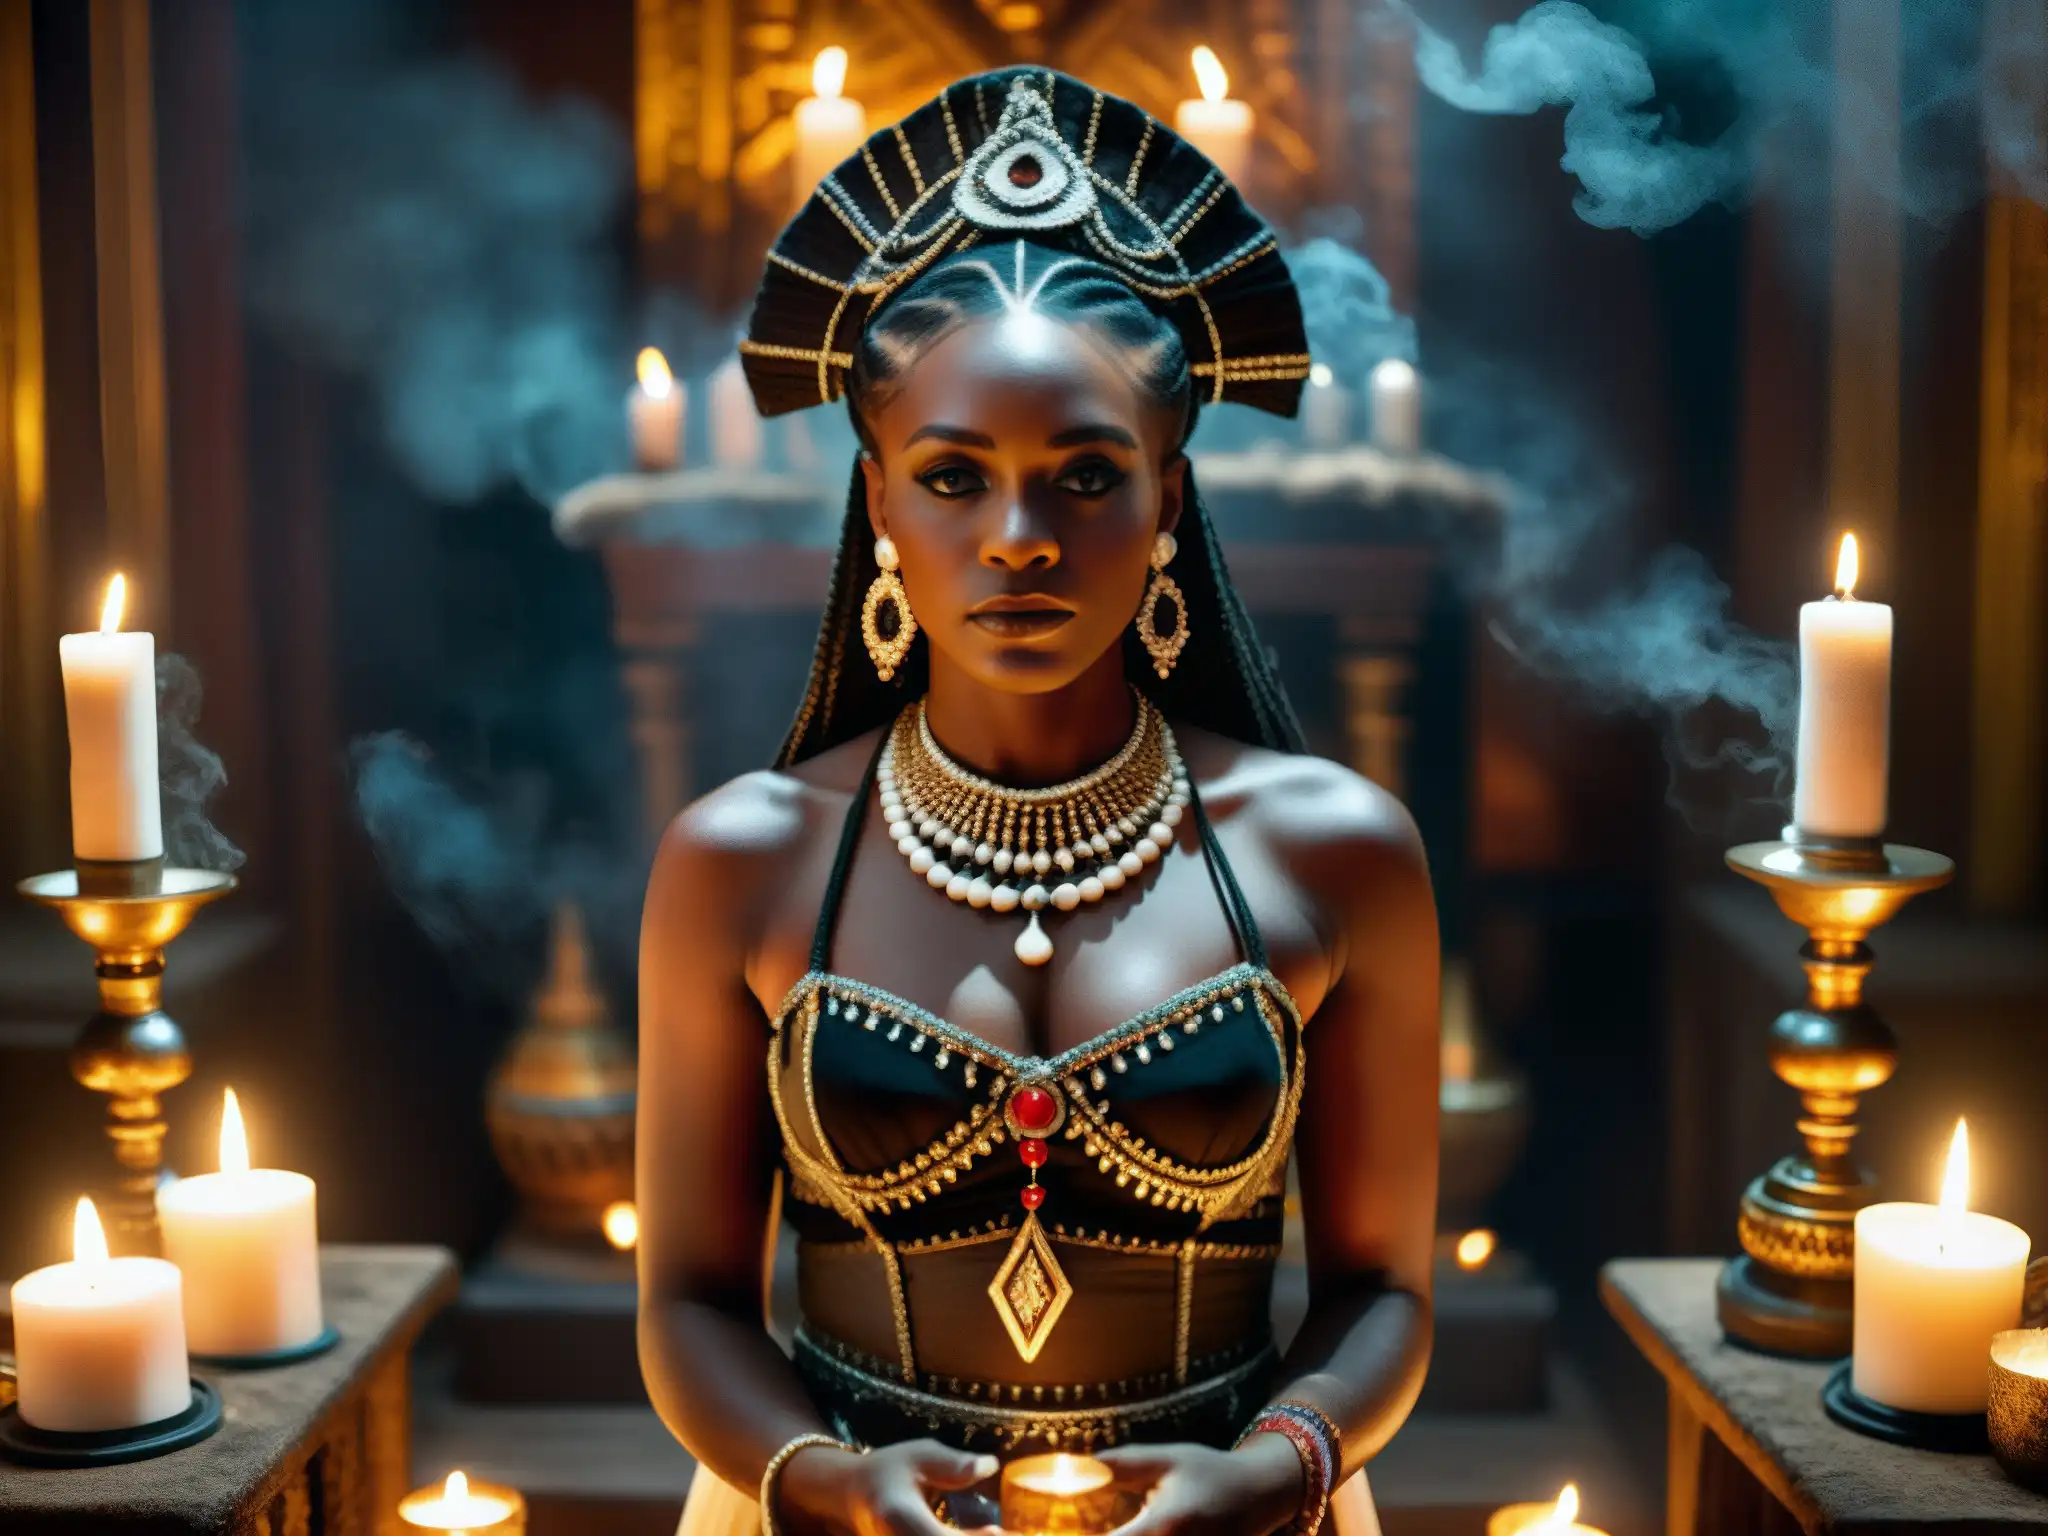 Hechizos vudú Nueva Orleans: imagen de vudú en un místico templo con una sacerdotisa realizando un ritual entre velas y humo de incienso